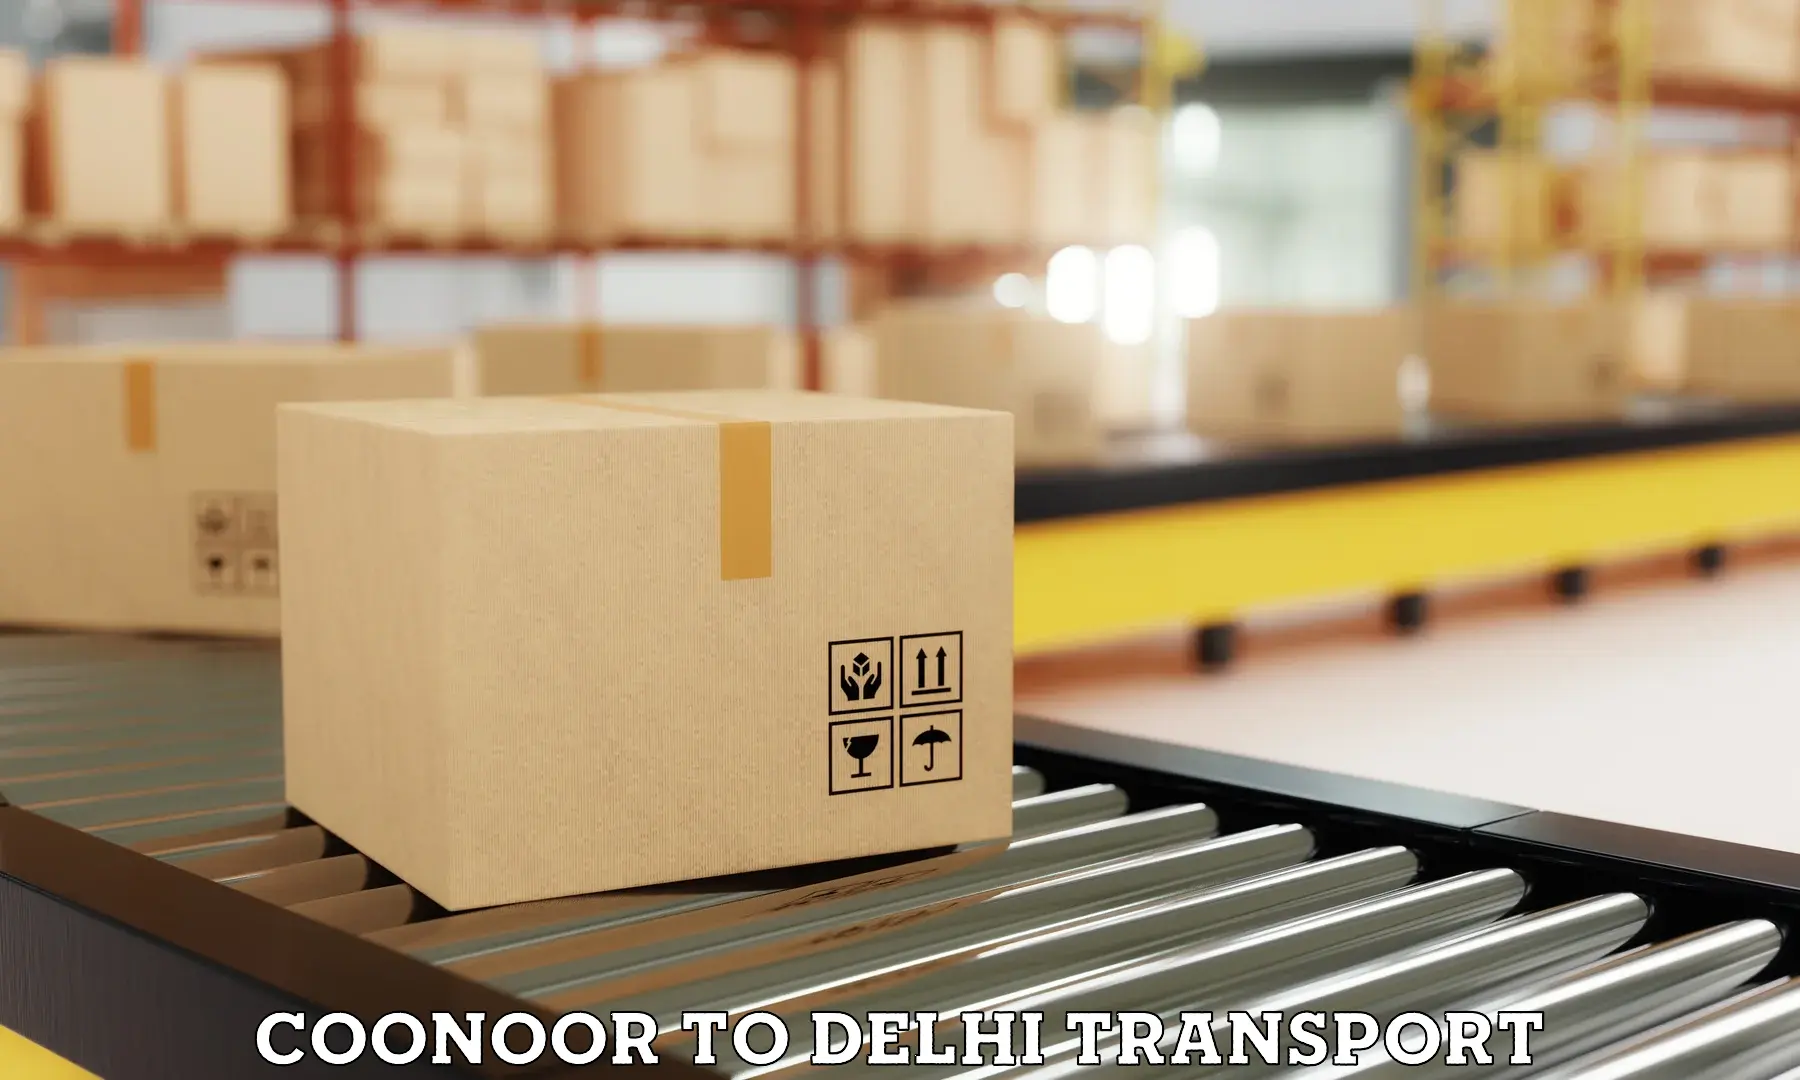 Goods delivery service Coonoor to Delhi